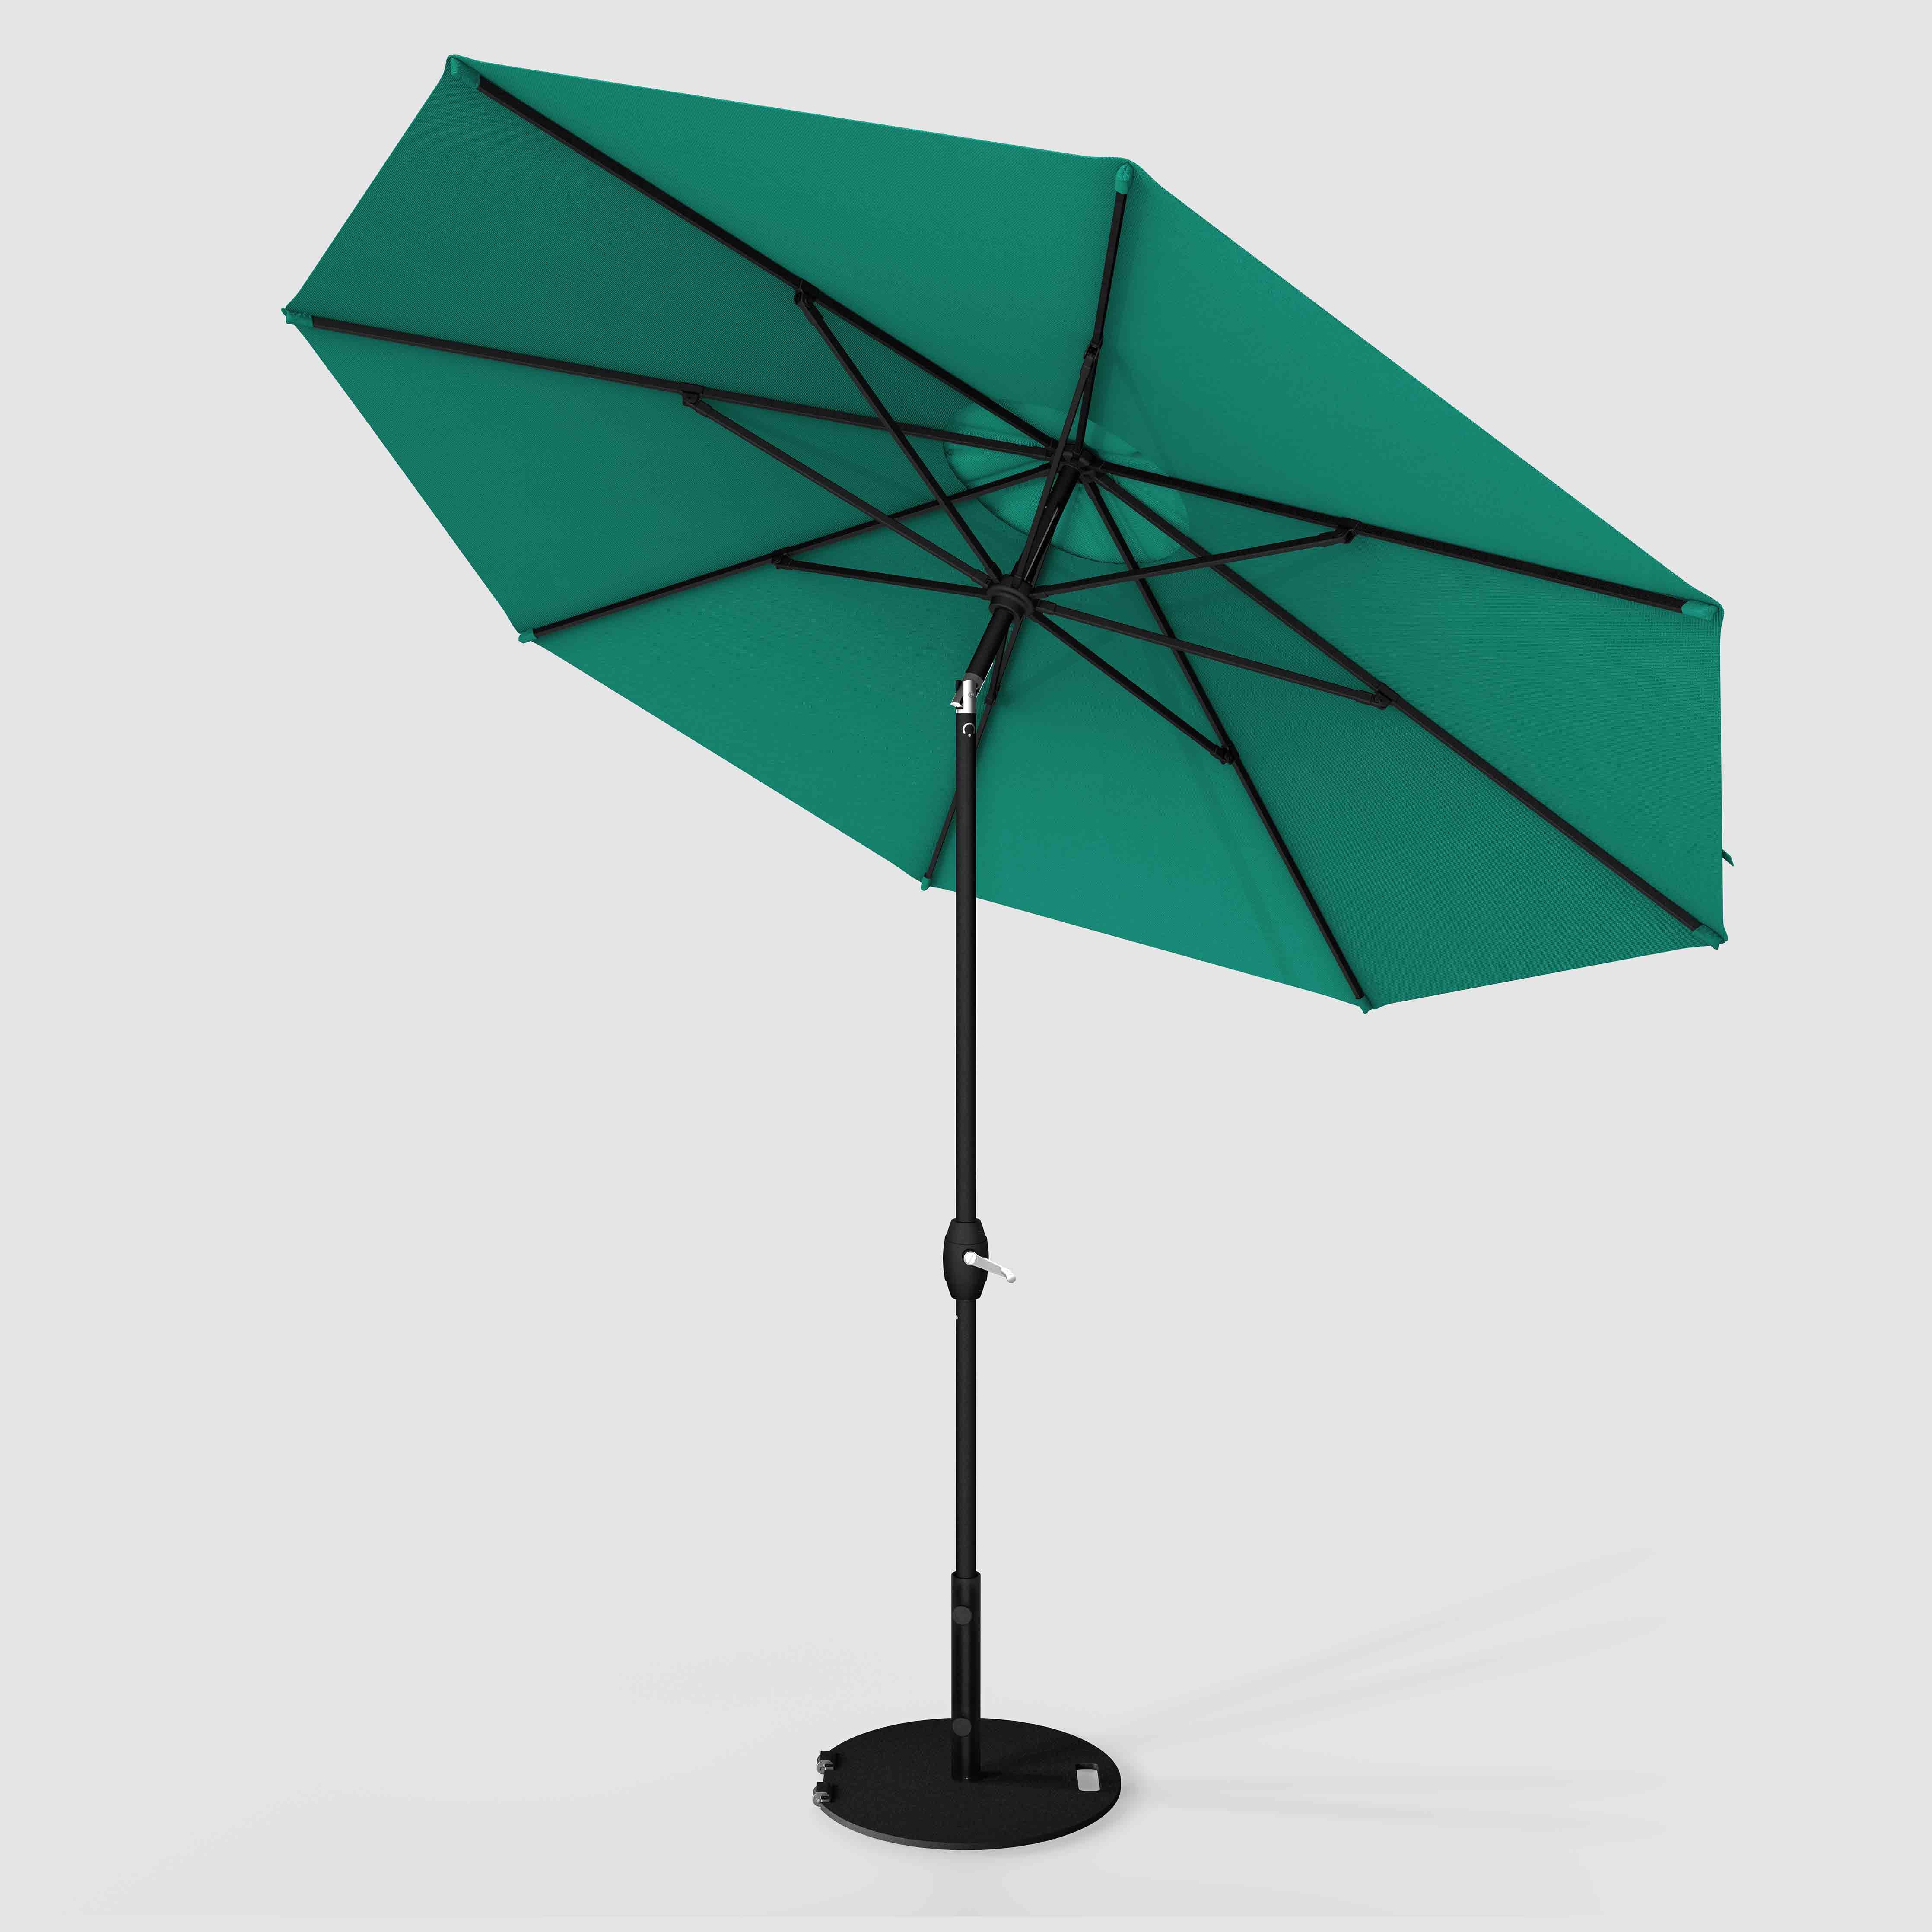 The Lean™ - Sunbrella Canvas Teal